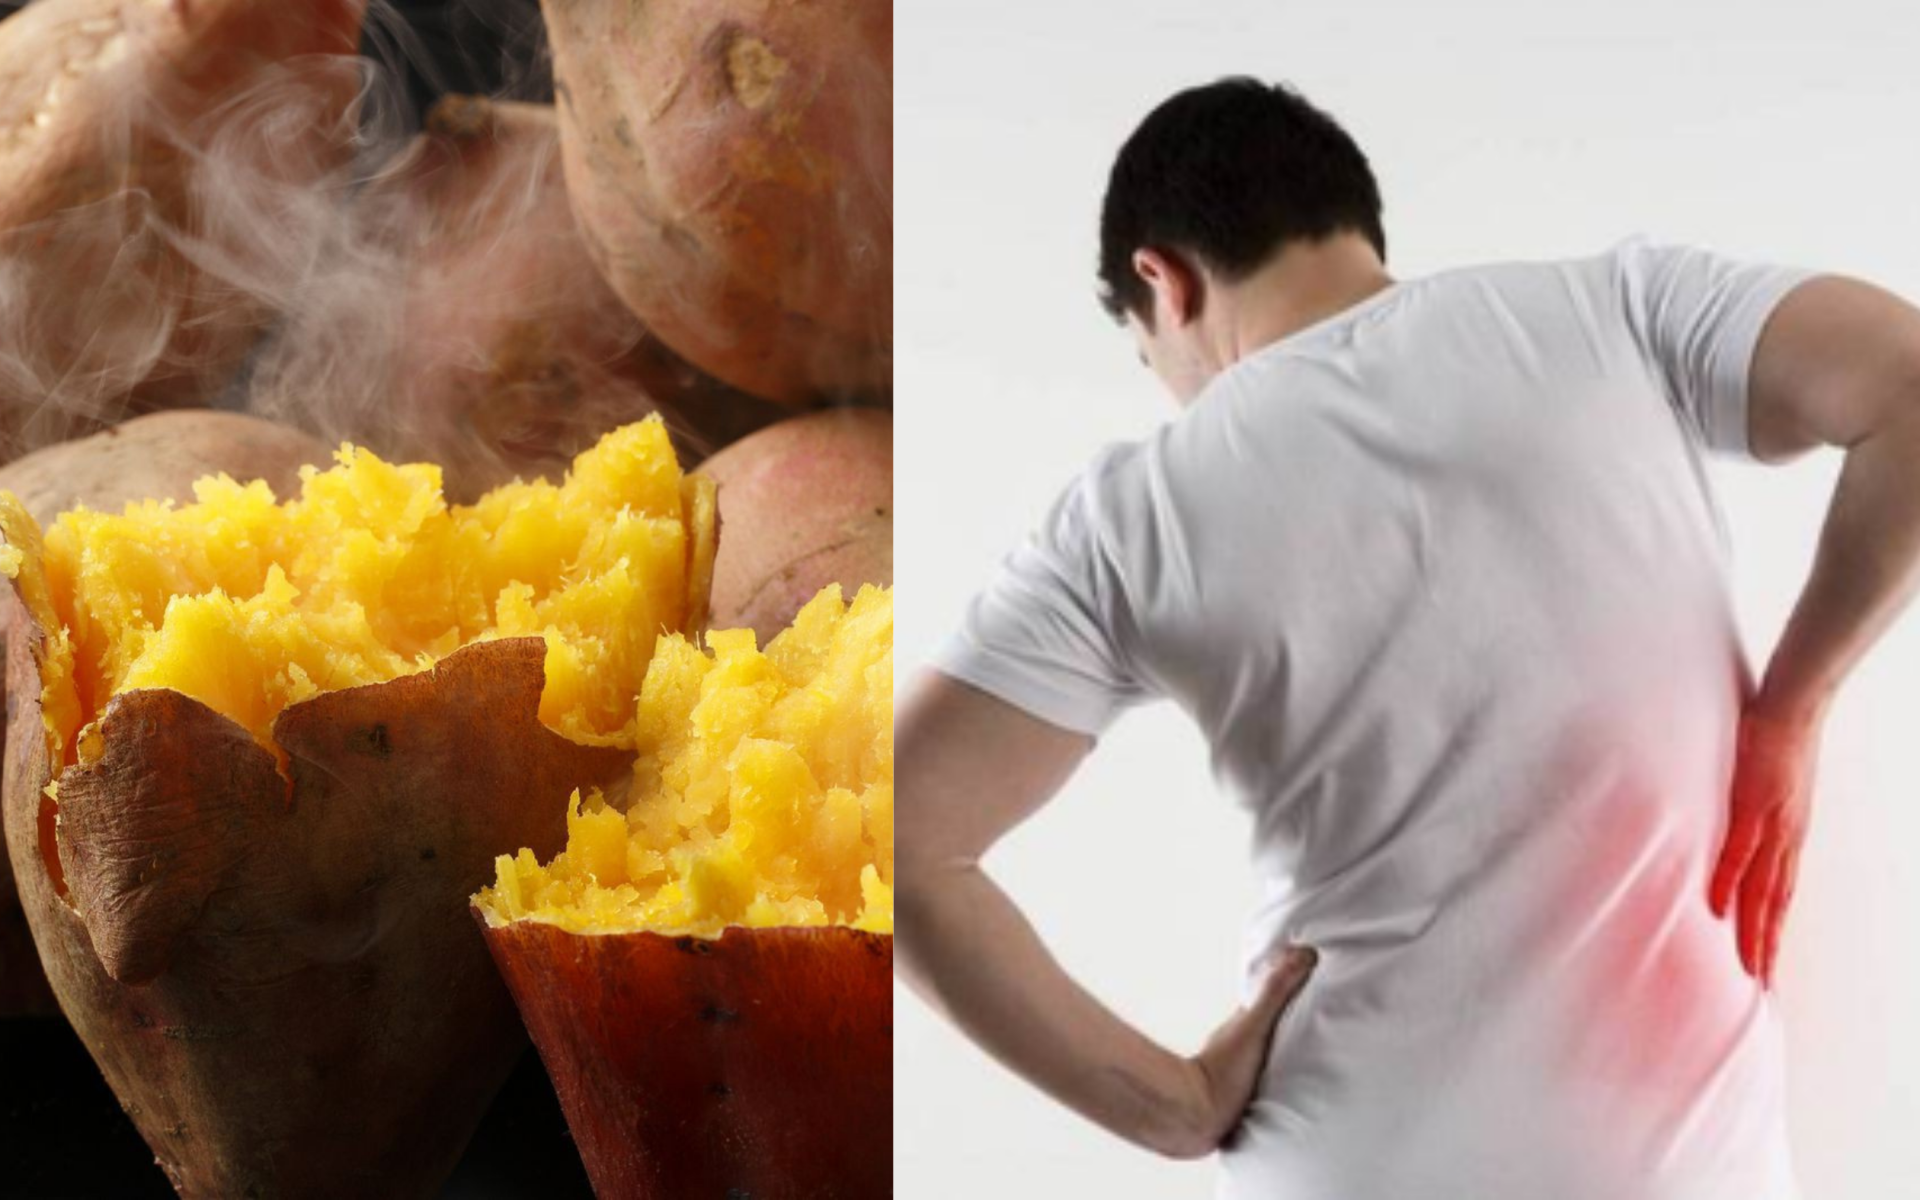 Những điều cấm kỵ khi ăn khoai lang, cẩn thận kẻo "rước hoạ vào thân"